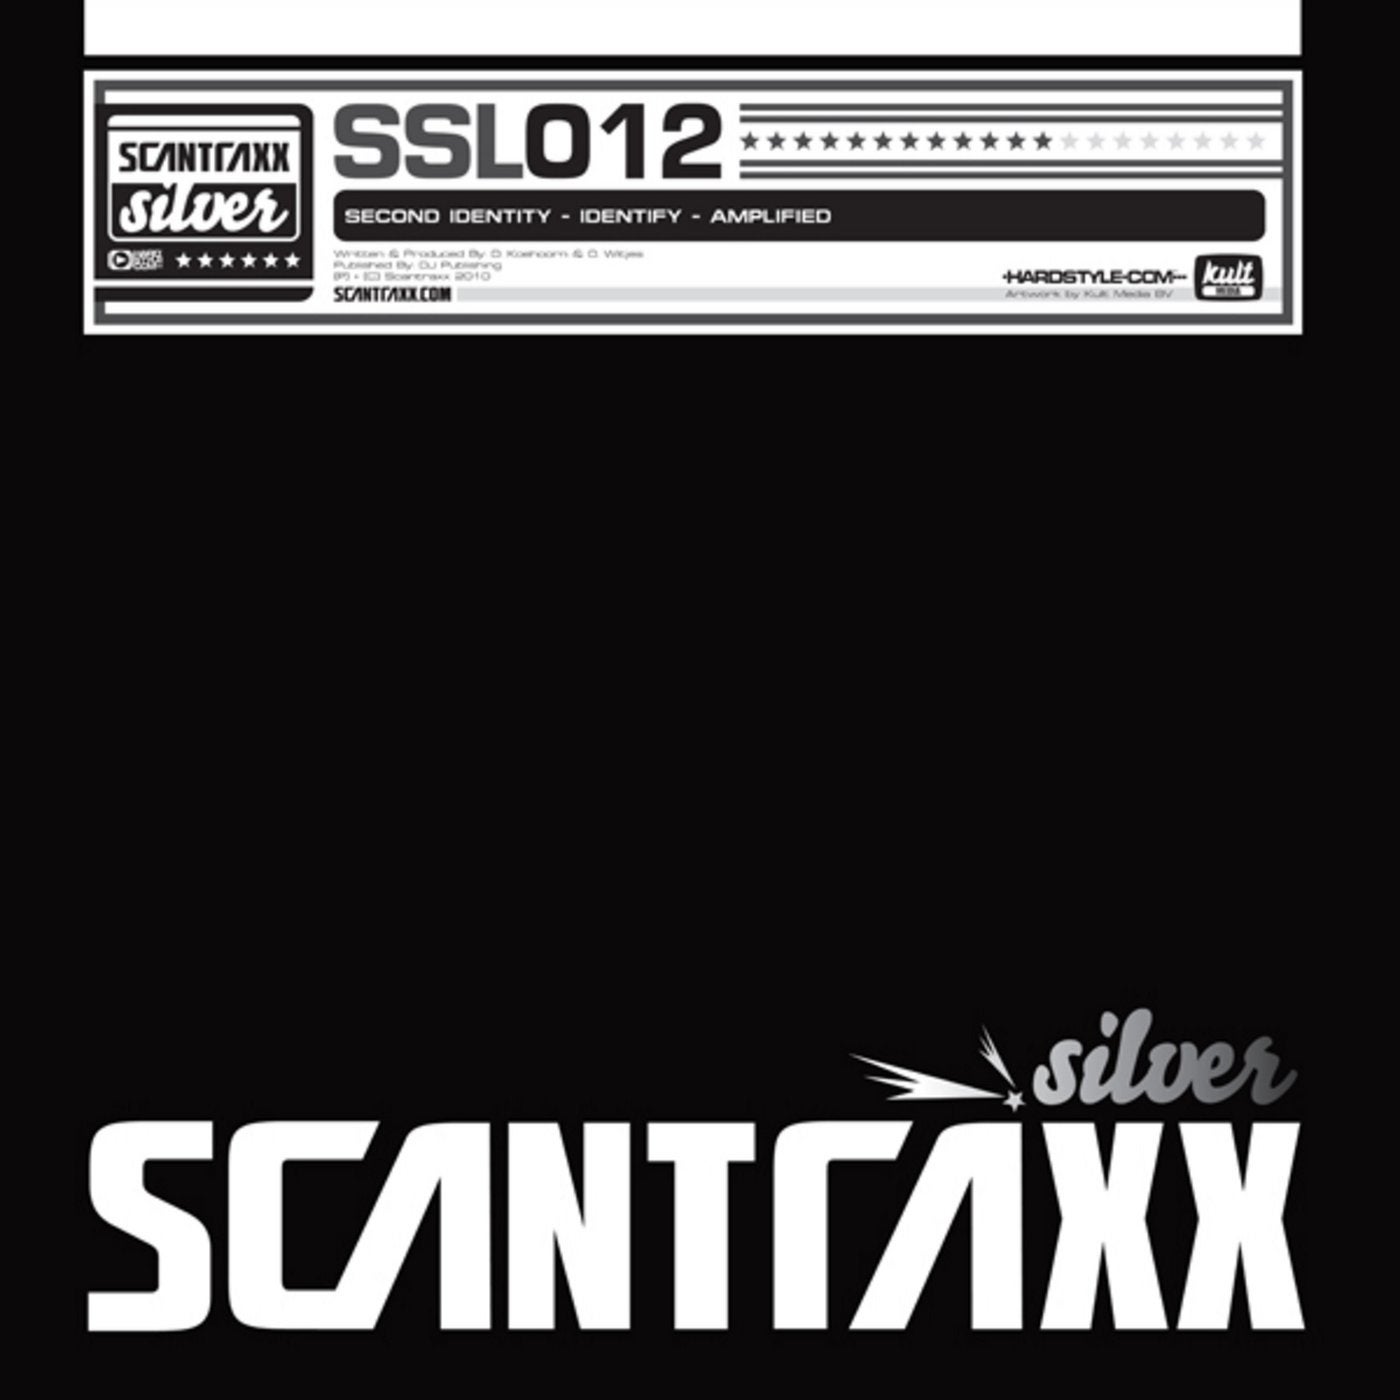 Scantraxx Silver 012